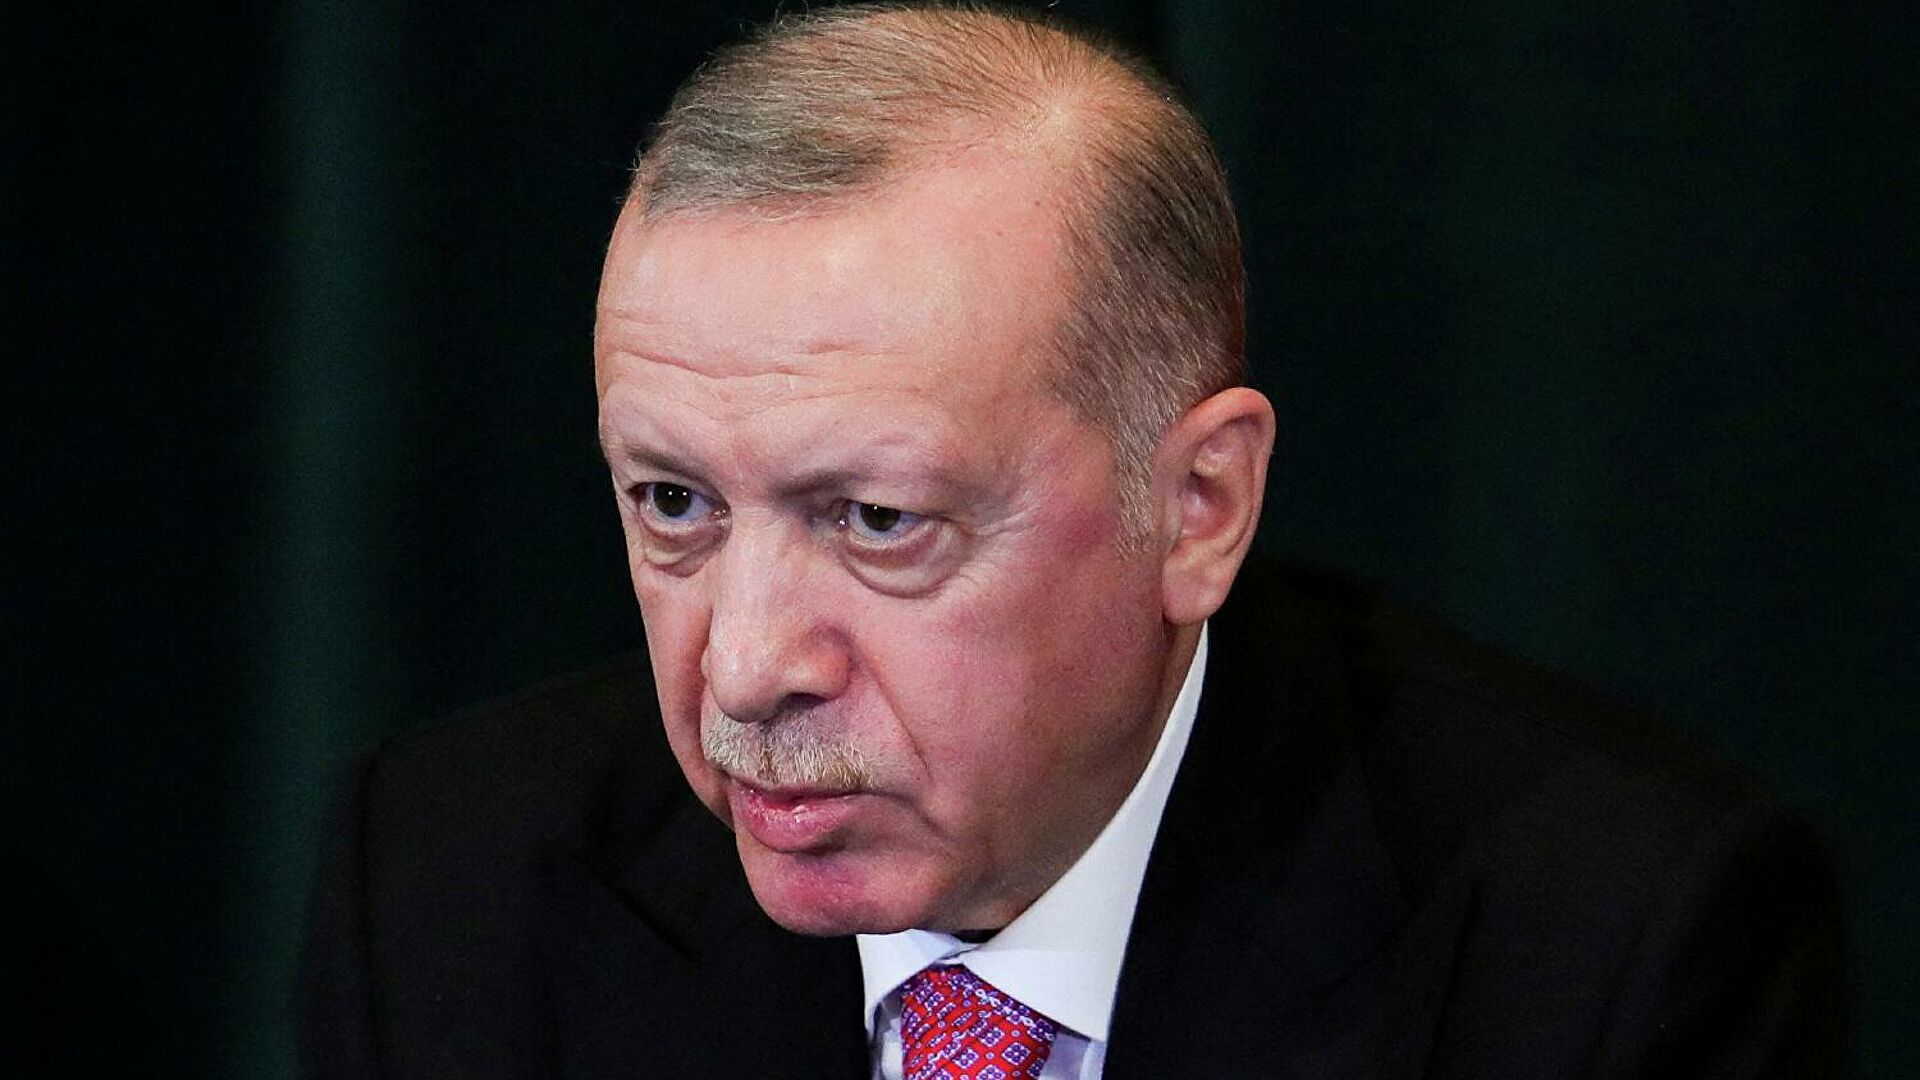 أردوغان: “النظام الدولي الذي يكون فيه مصير193 دولة عضو في الأمم المتحدة بيد 5 دول فقط، ليس عادلا ولا مقبولا، وينبغي إصلاحه​”